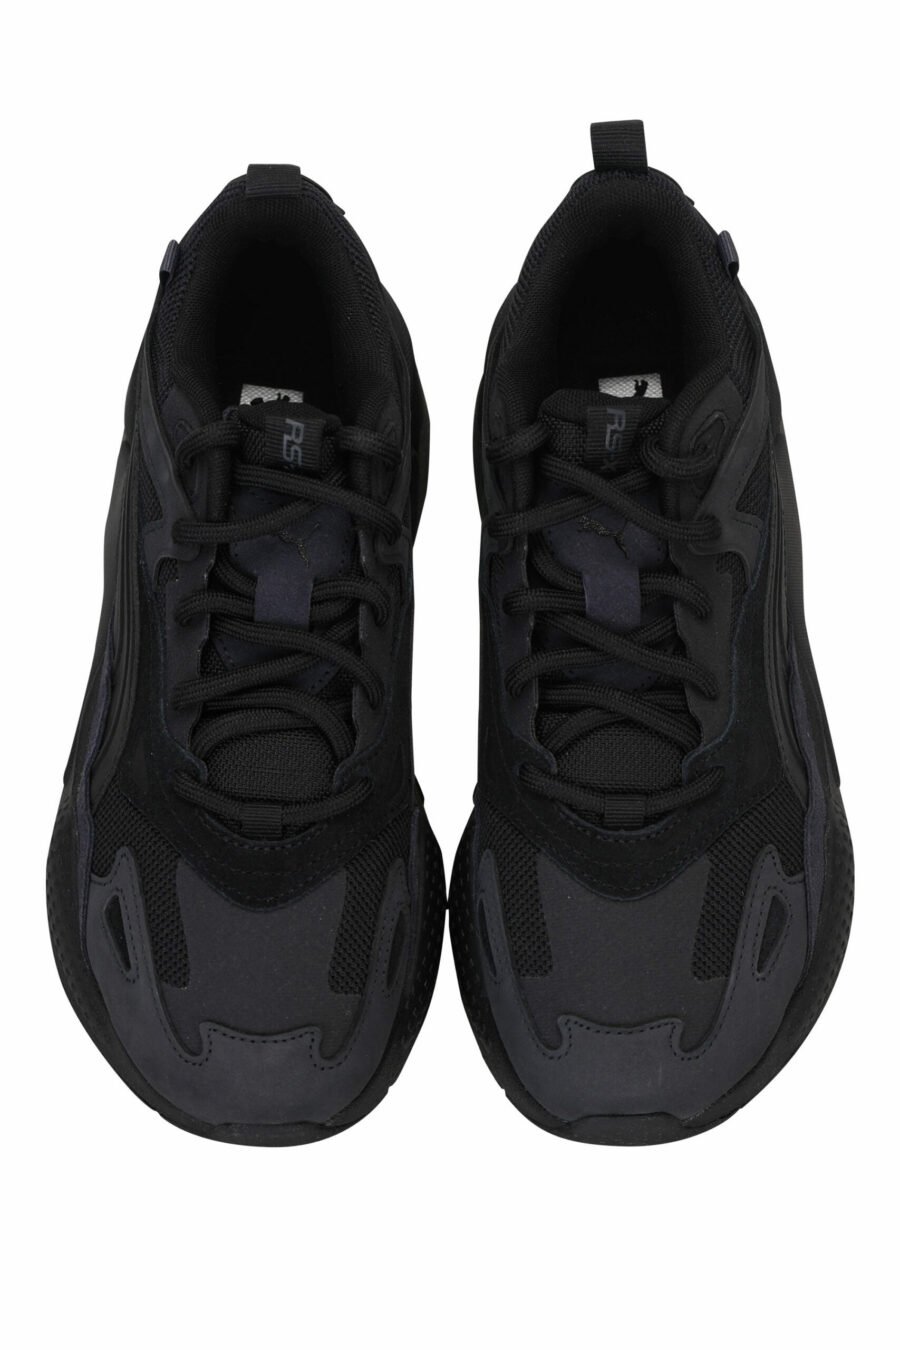 Gemischte schwarze Schuhe " RS-X " mit Mini-Logo - 4065452600723 4 skaliert